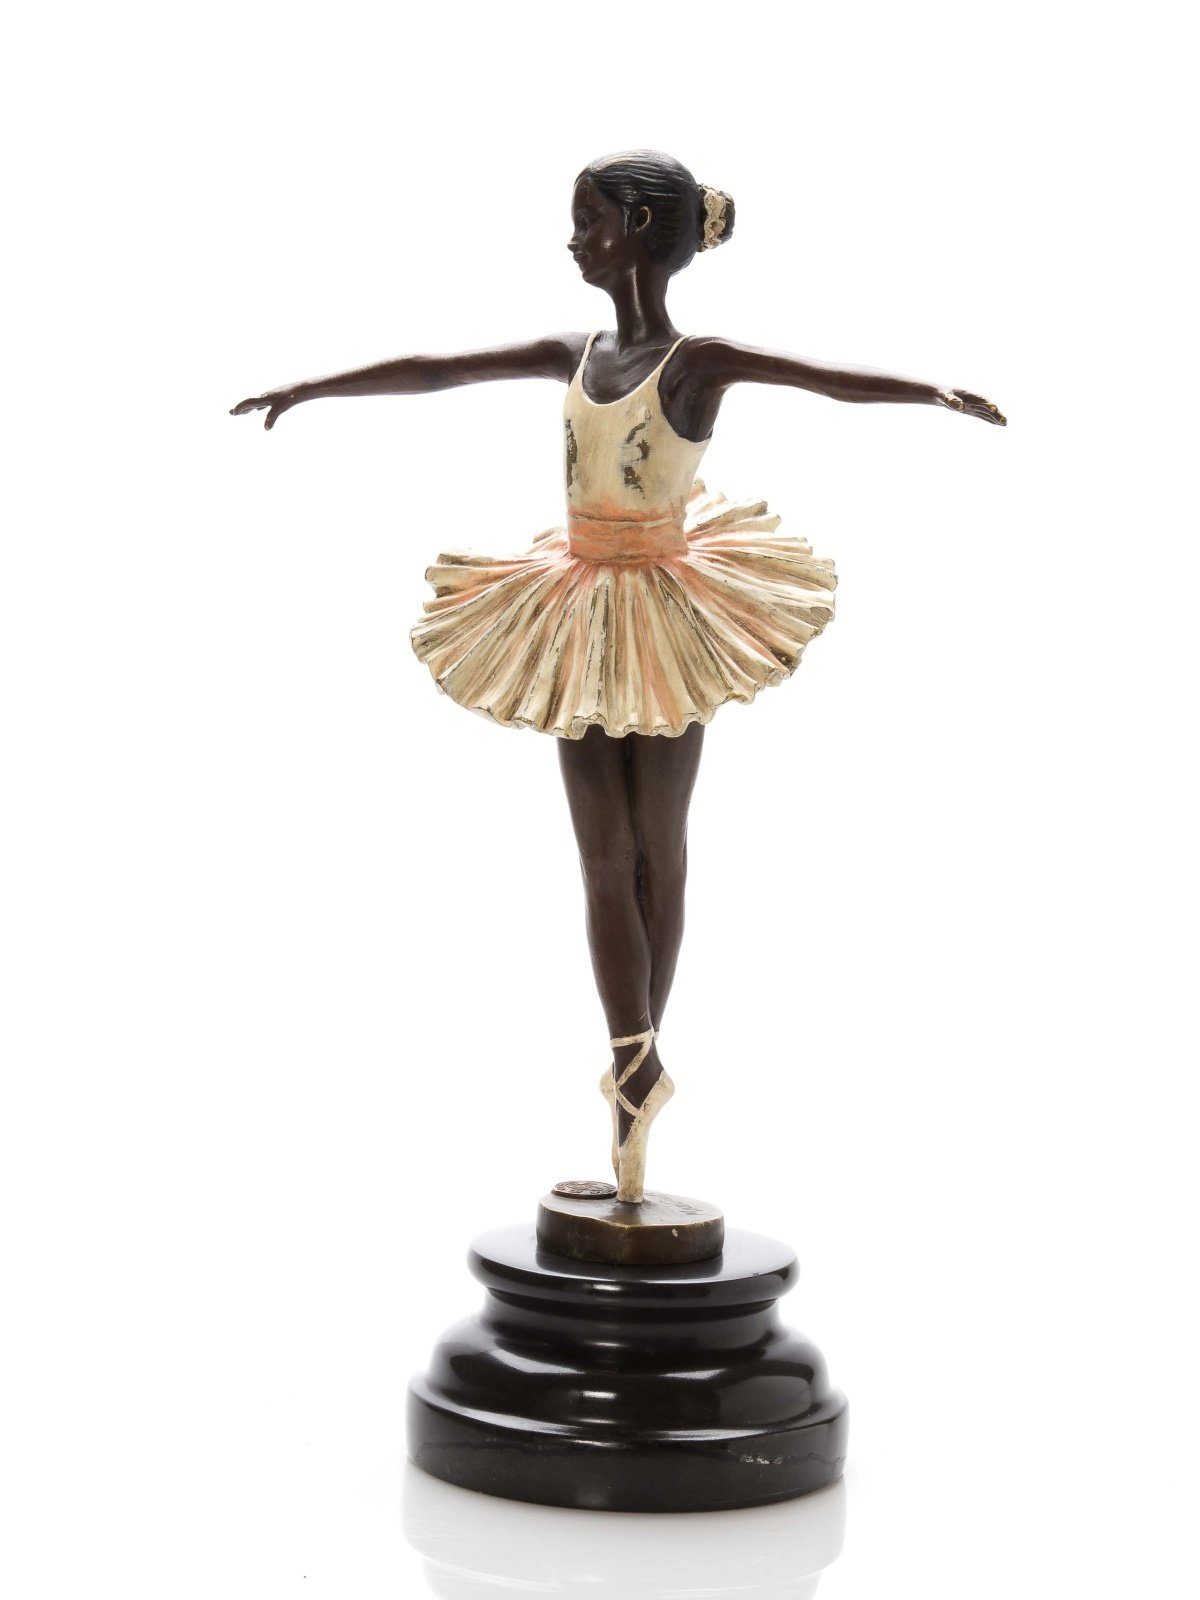 Aubaho Ballett Antik-Stil Skulptur F Skulptur Bronze Ballerina Tänzerin Bronzeskulptur